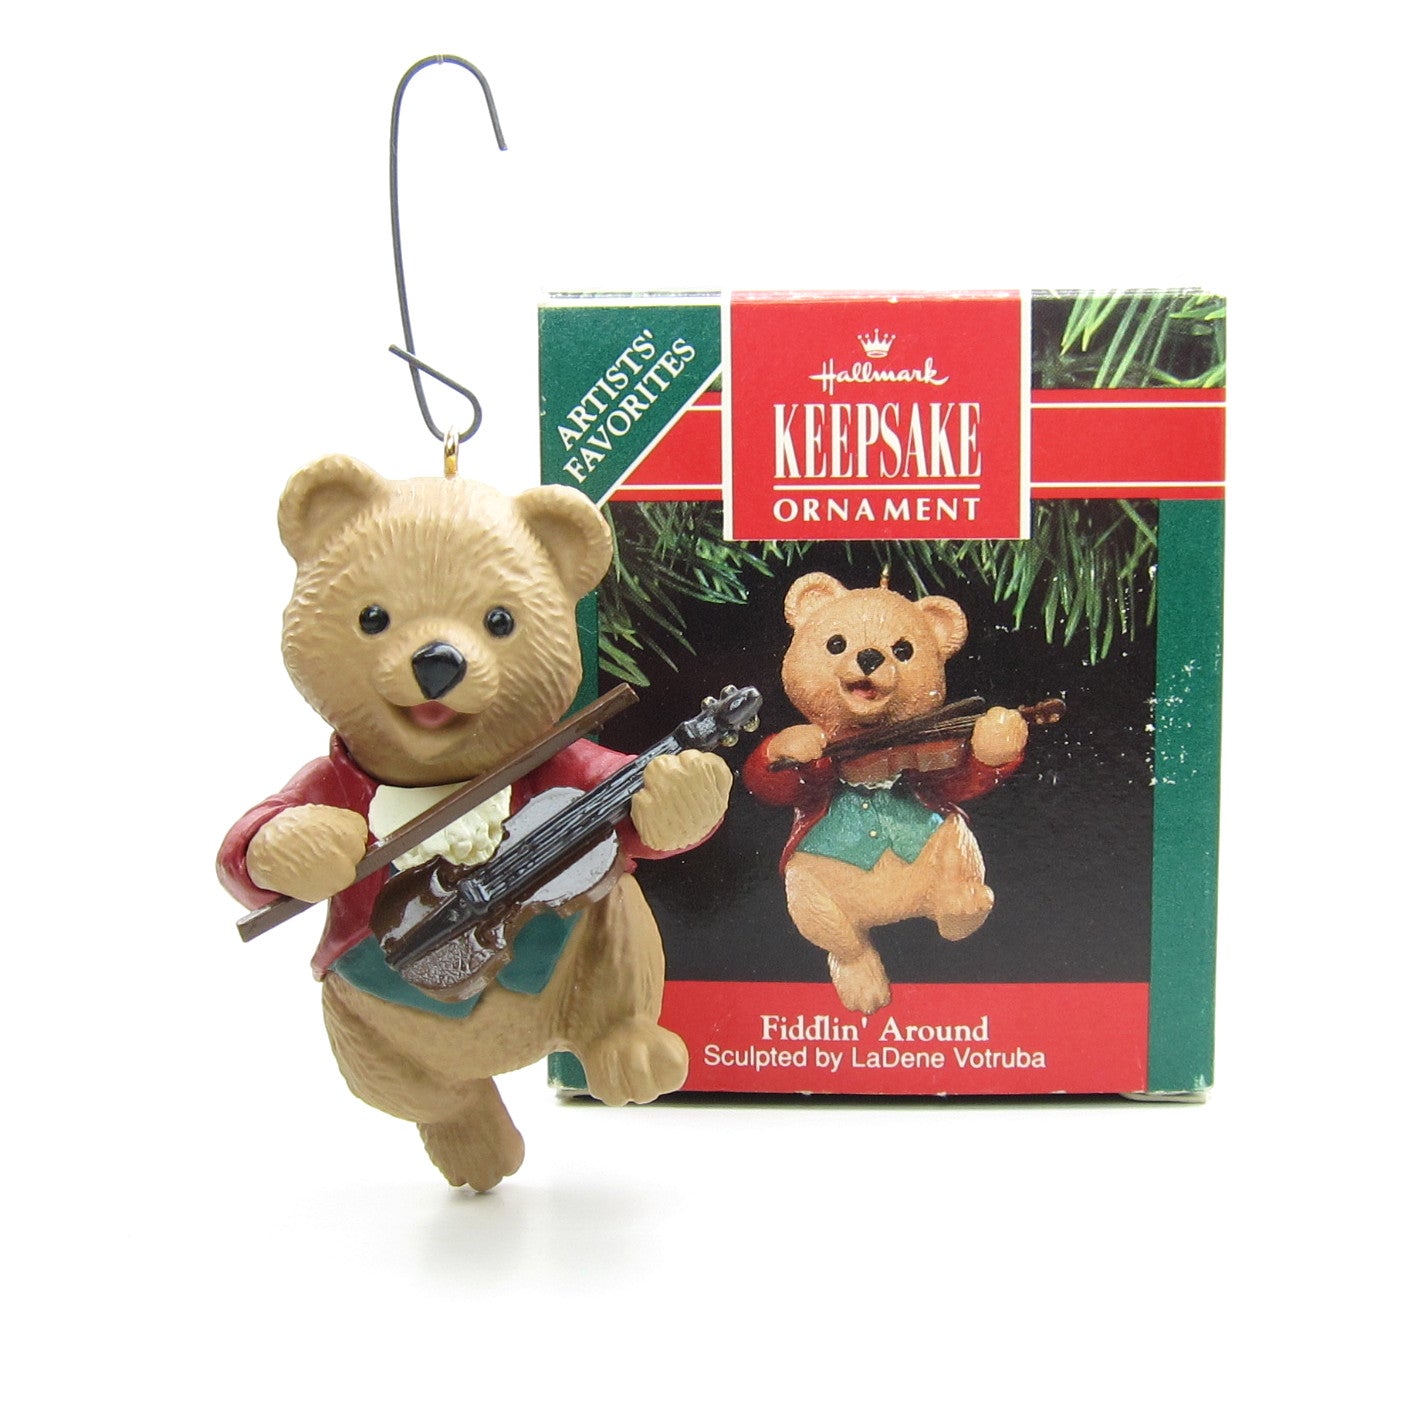 Hallmark Fiddlin' Around teddy bear playing fiddle ornament